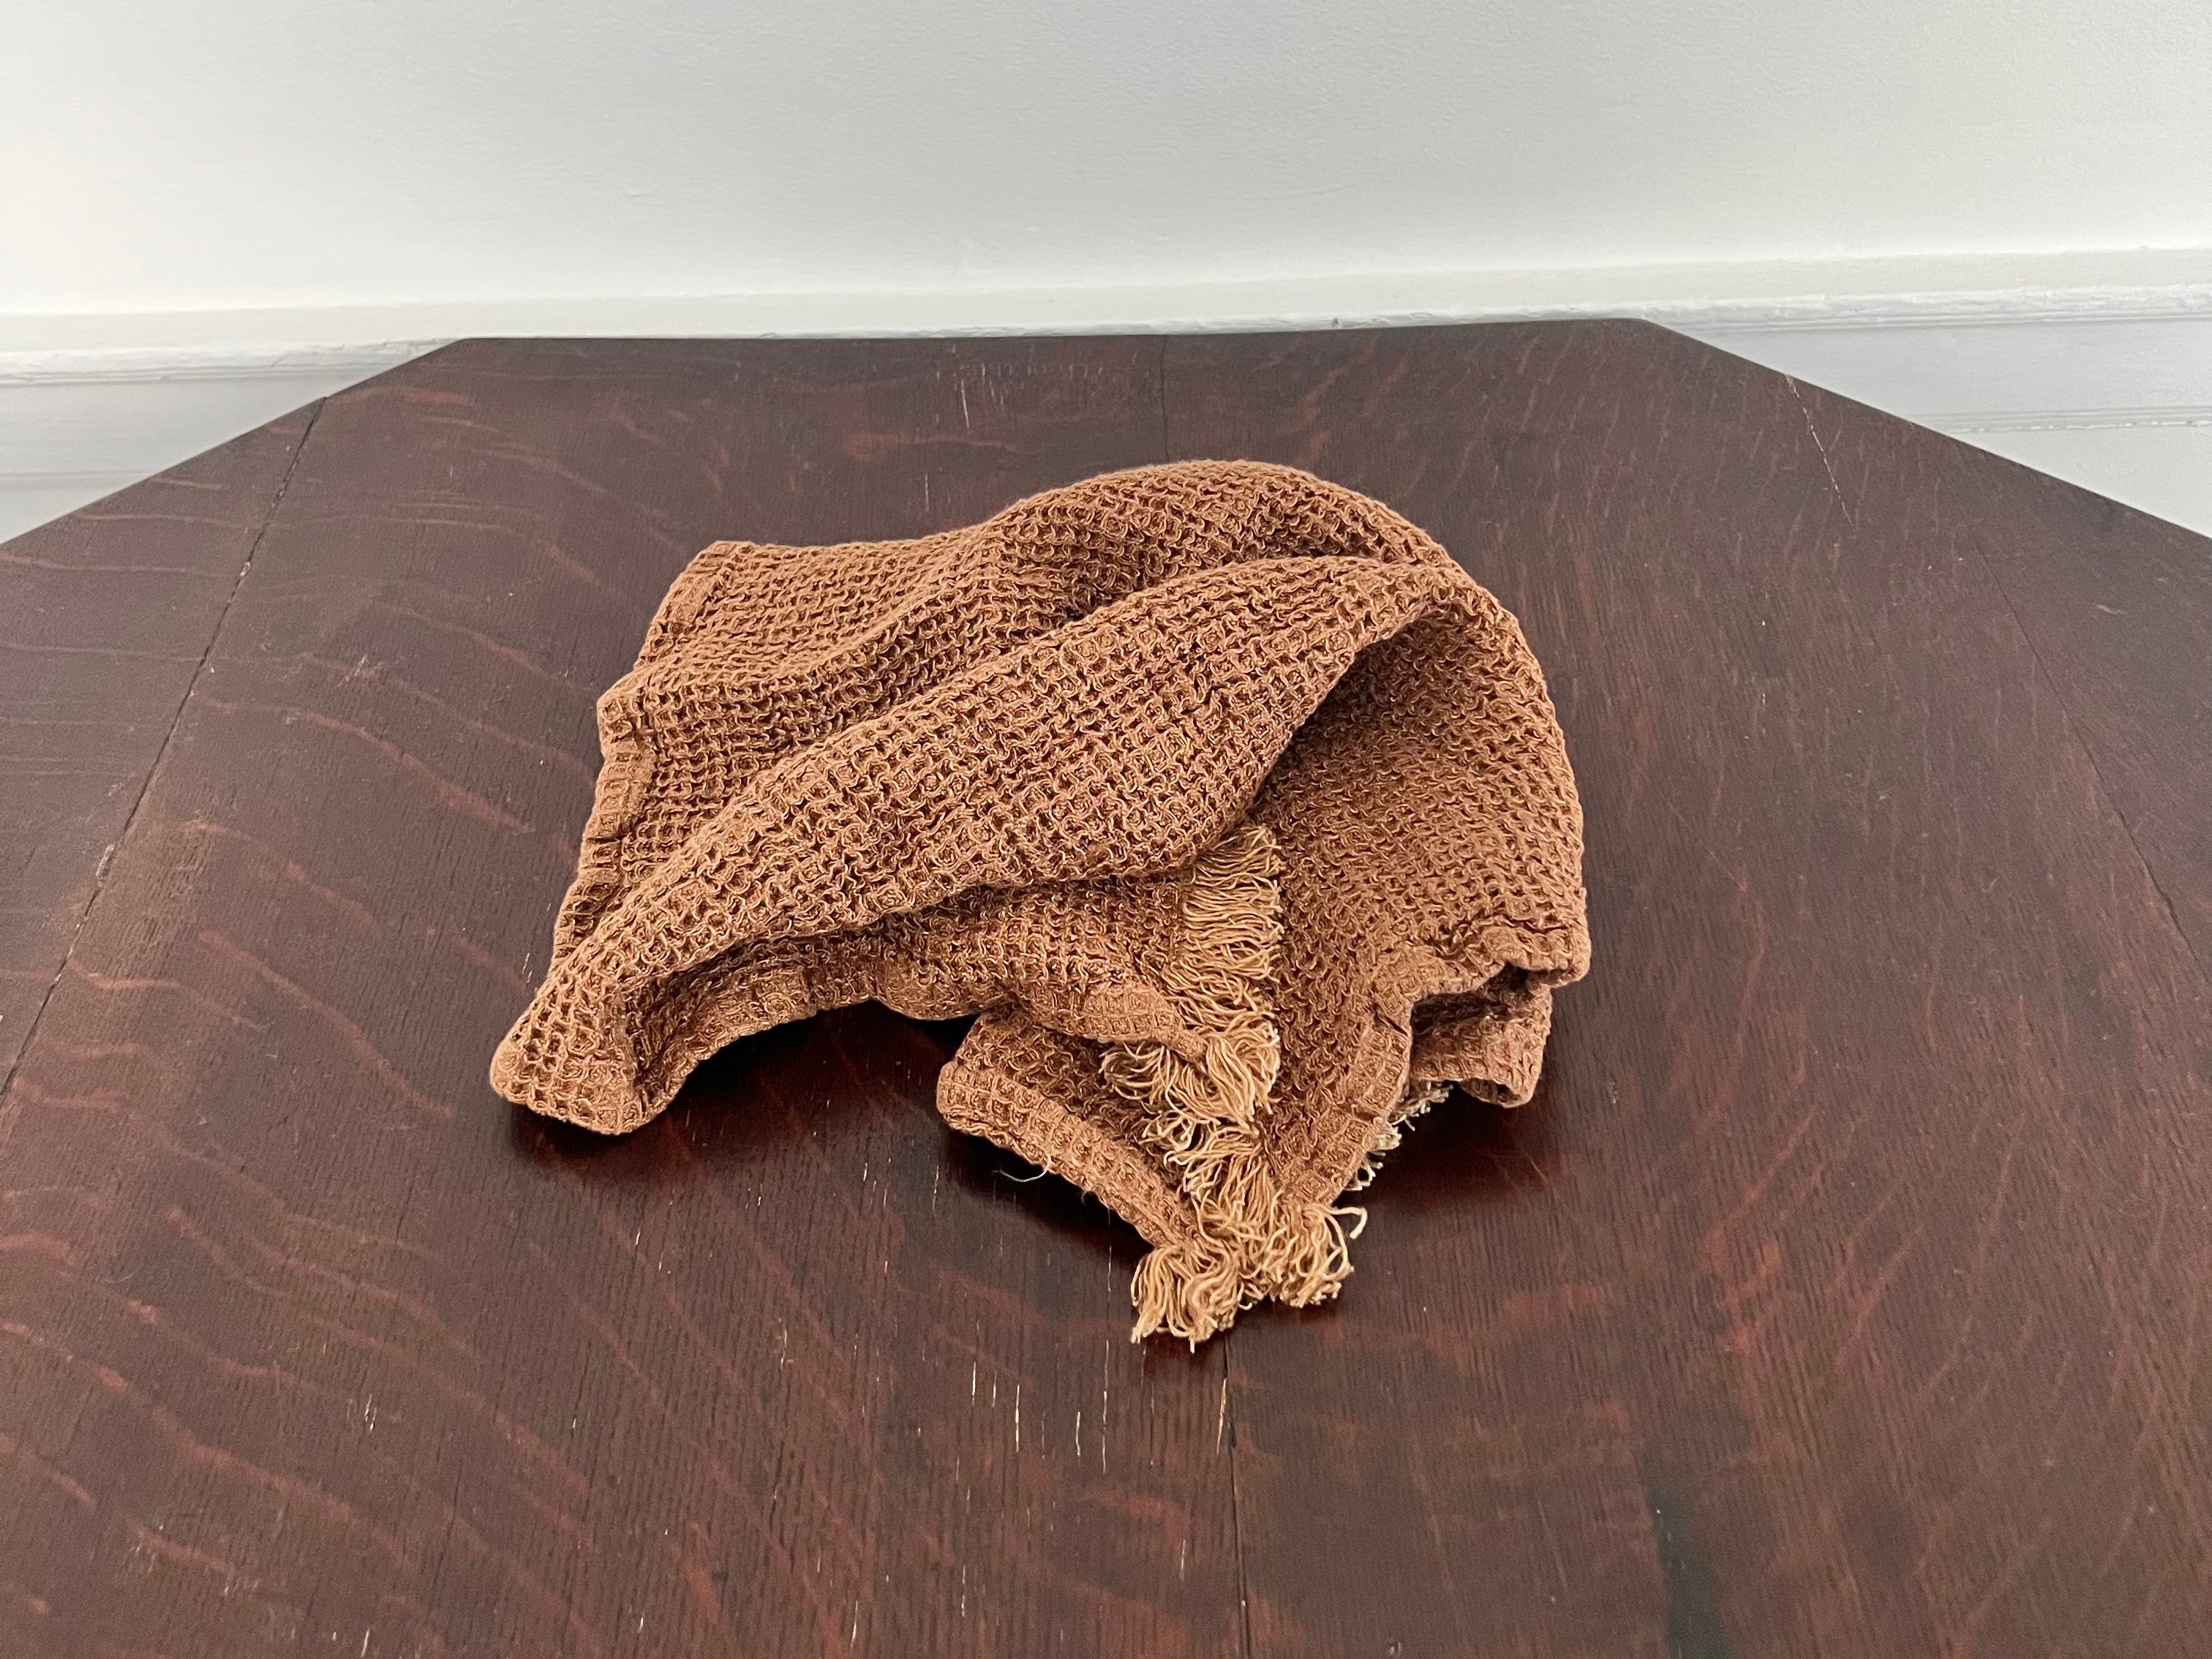 Flocca Linen Hand Towel - Floss